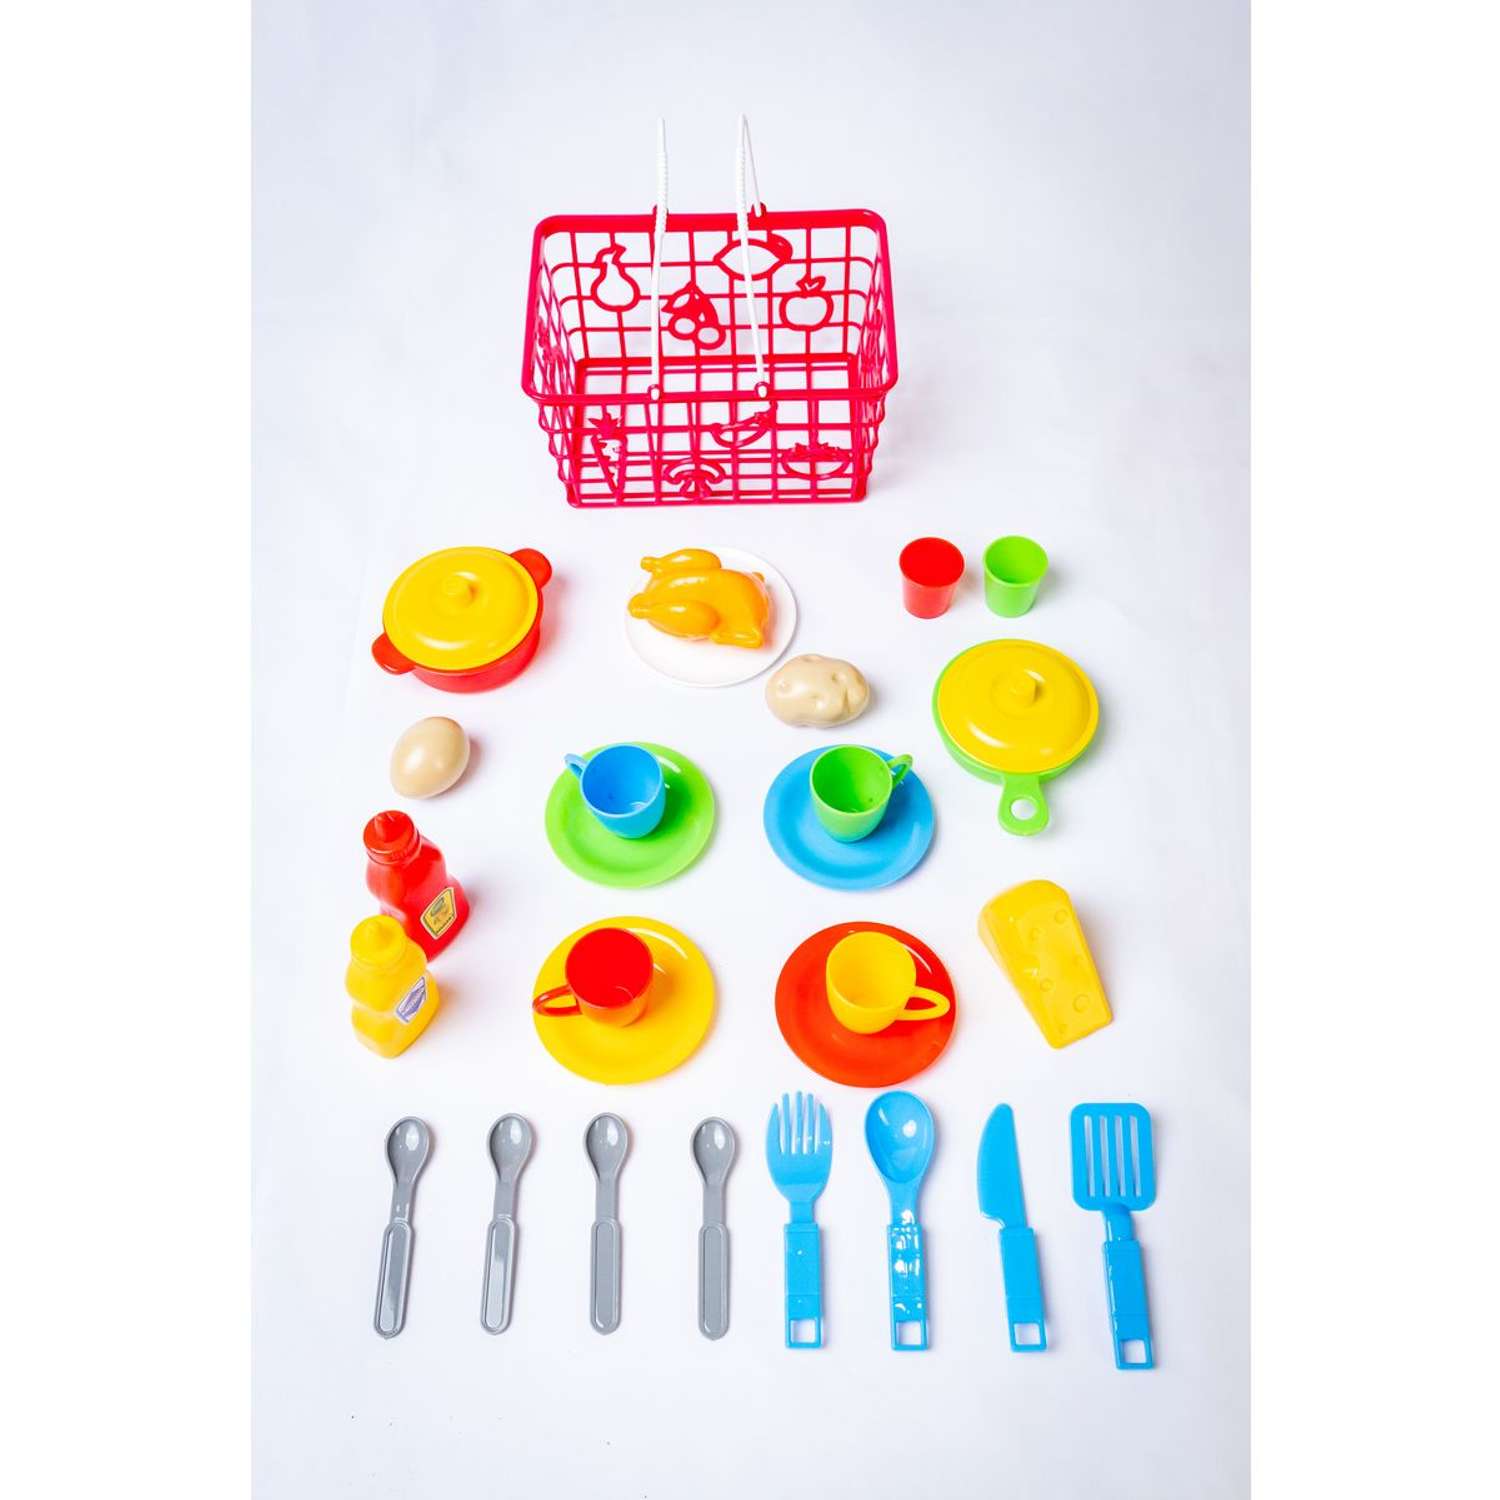 Детская игрушечная посуда Green Plast с продуктами для кухни в корзинке - фото 2